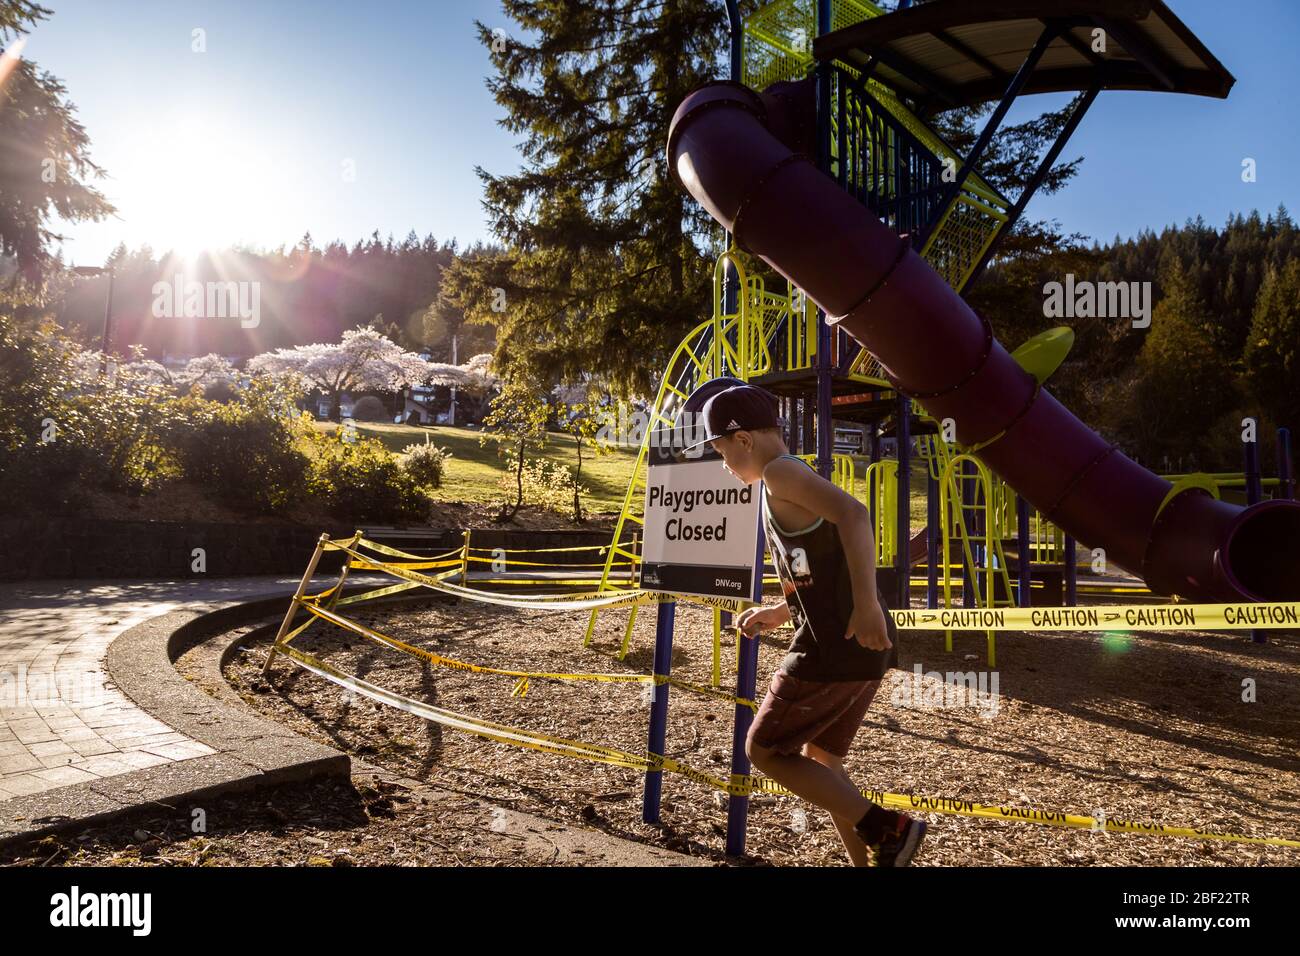 NORTH VANCOUVER, BC, CANADÁ - 11 DE ABRIL de 2020: Los niños juegan fuera de un parque infantil cerrado en un parque público North Vancouver alineado con cinta de precaución Foto de stock